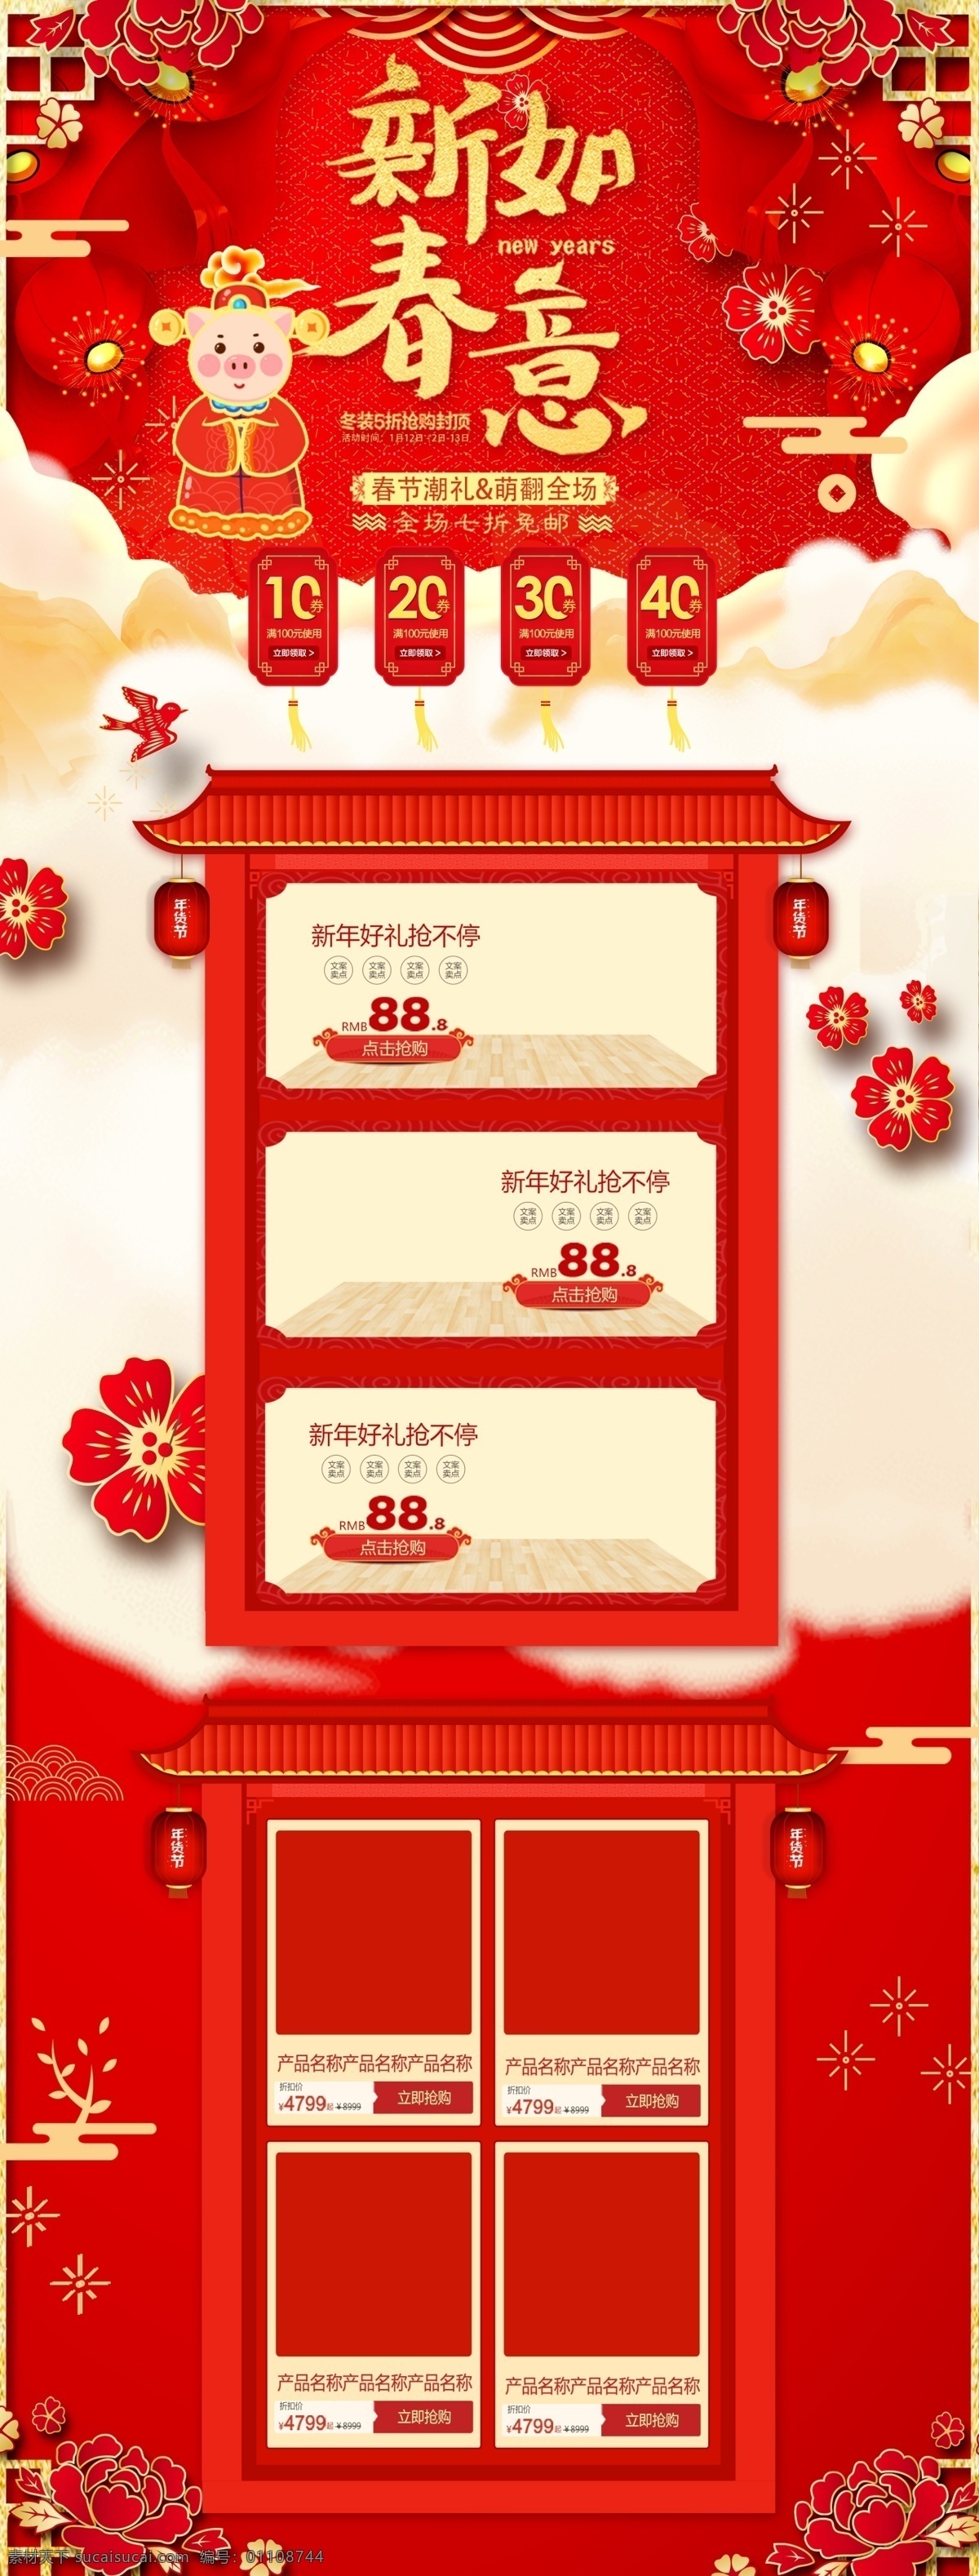 红色 中 国风 喜庆 新春 新年 春节 电商 首页 中国风 年货节 猪年 淘宝